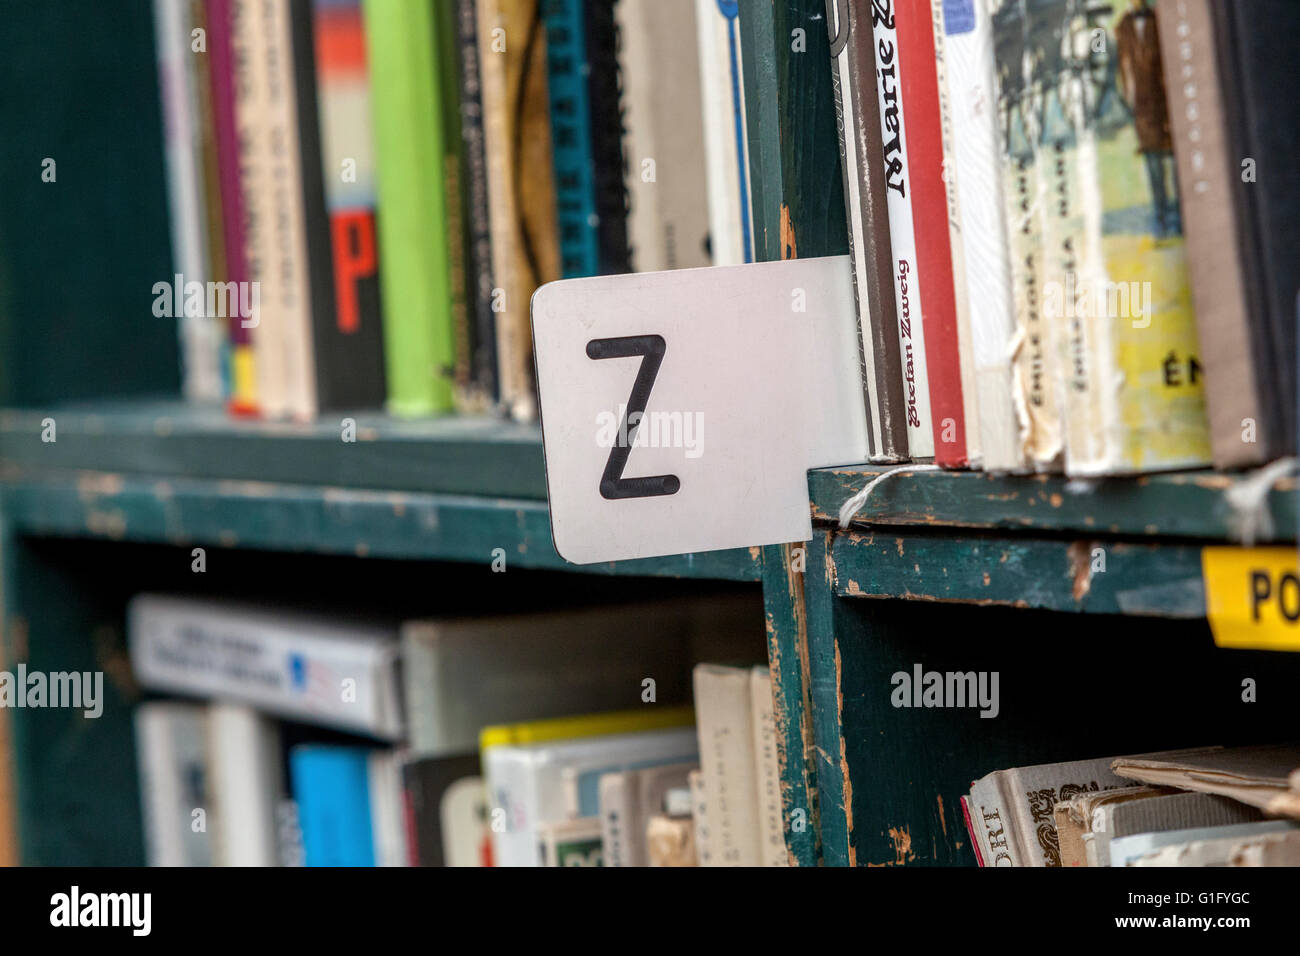 Alphabetische Sortierung von Büchern, die in den Regalen liegen, Bibliotheksbücher im Regal Stockfoto